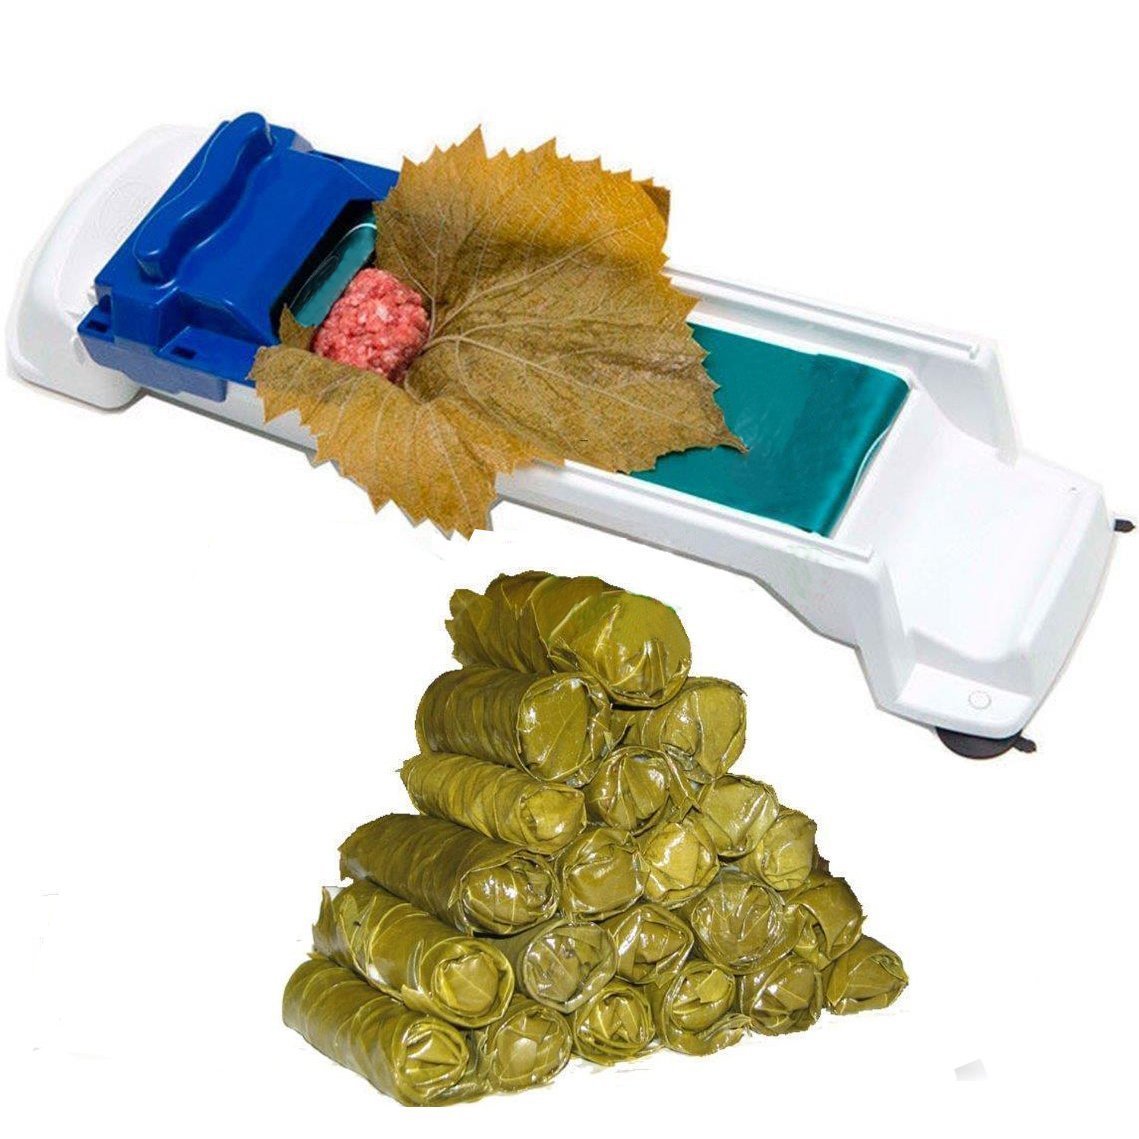 แฟชั่น ALDA ใหม่ครัวสะดวกใบองุ่นเครื่อง Magic การม้วนเนื้อเครื่องมือองุ่นยัดไส้และกระหล่ำปลีผัก Leaf Rolling ม้วนเครื่องมือทำซูชิเครื่อง